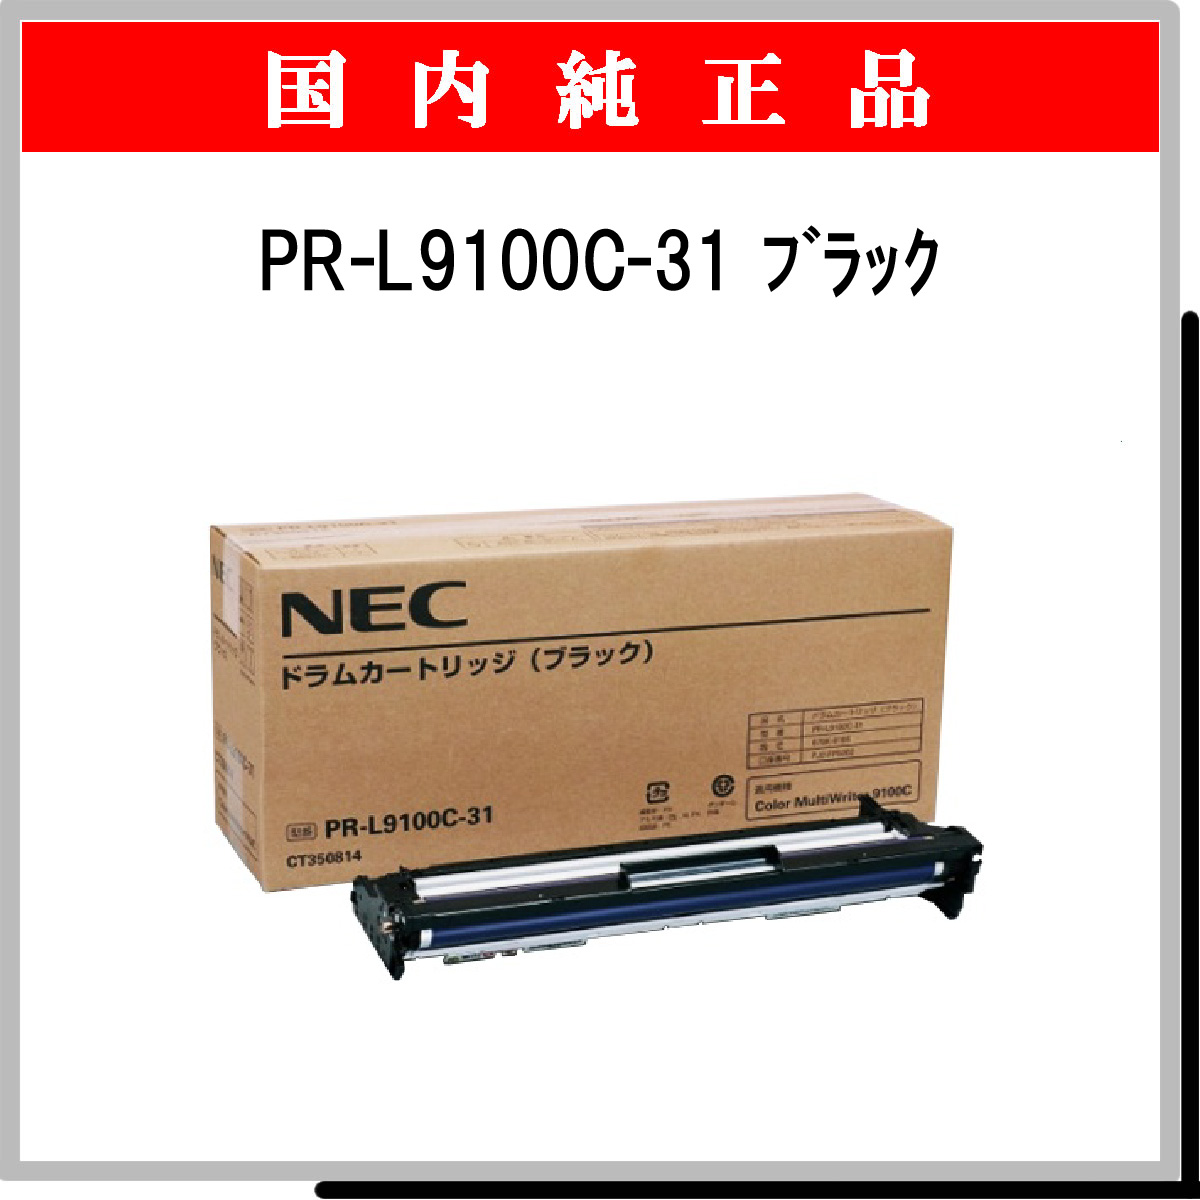 PR-L9100C-31 純正